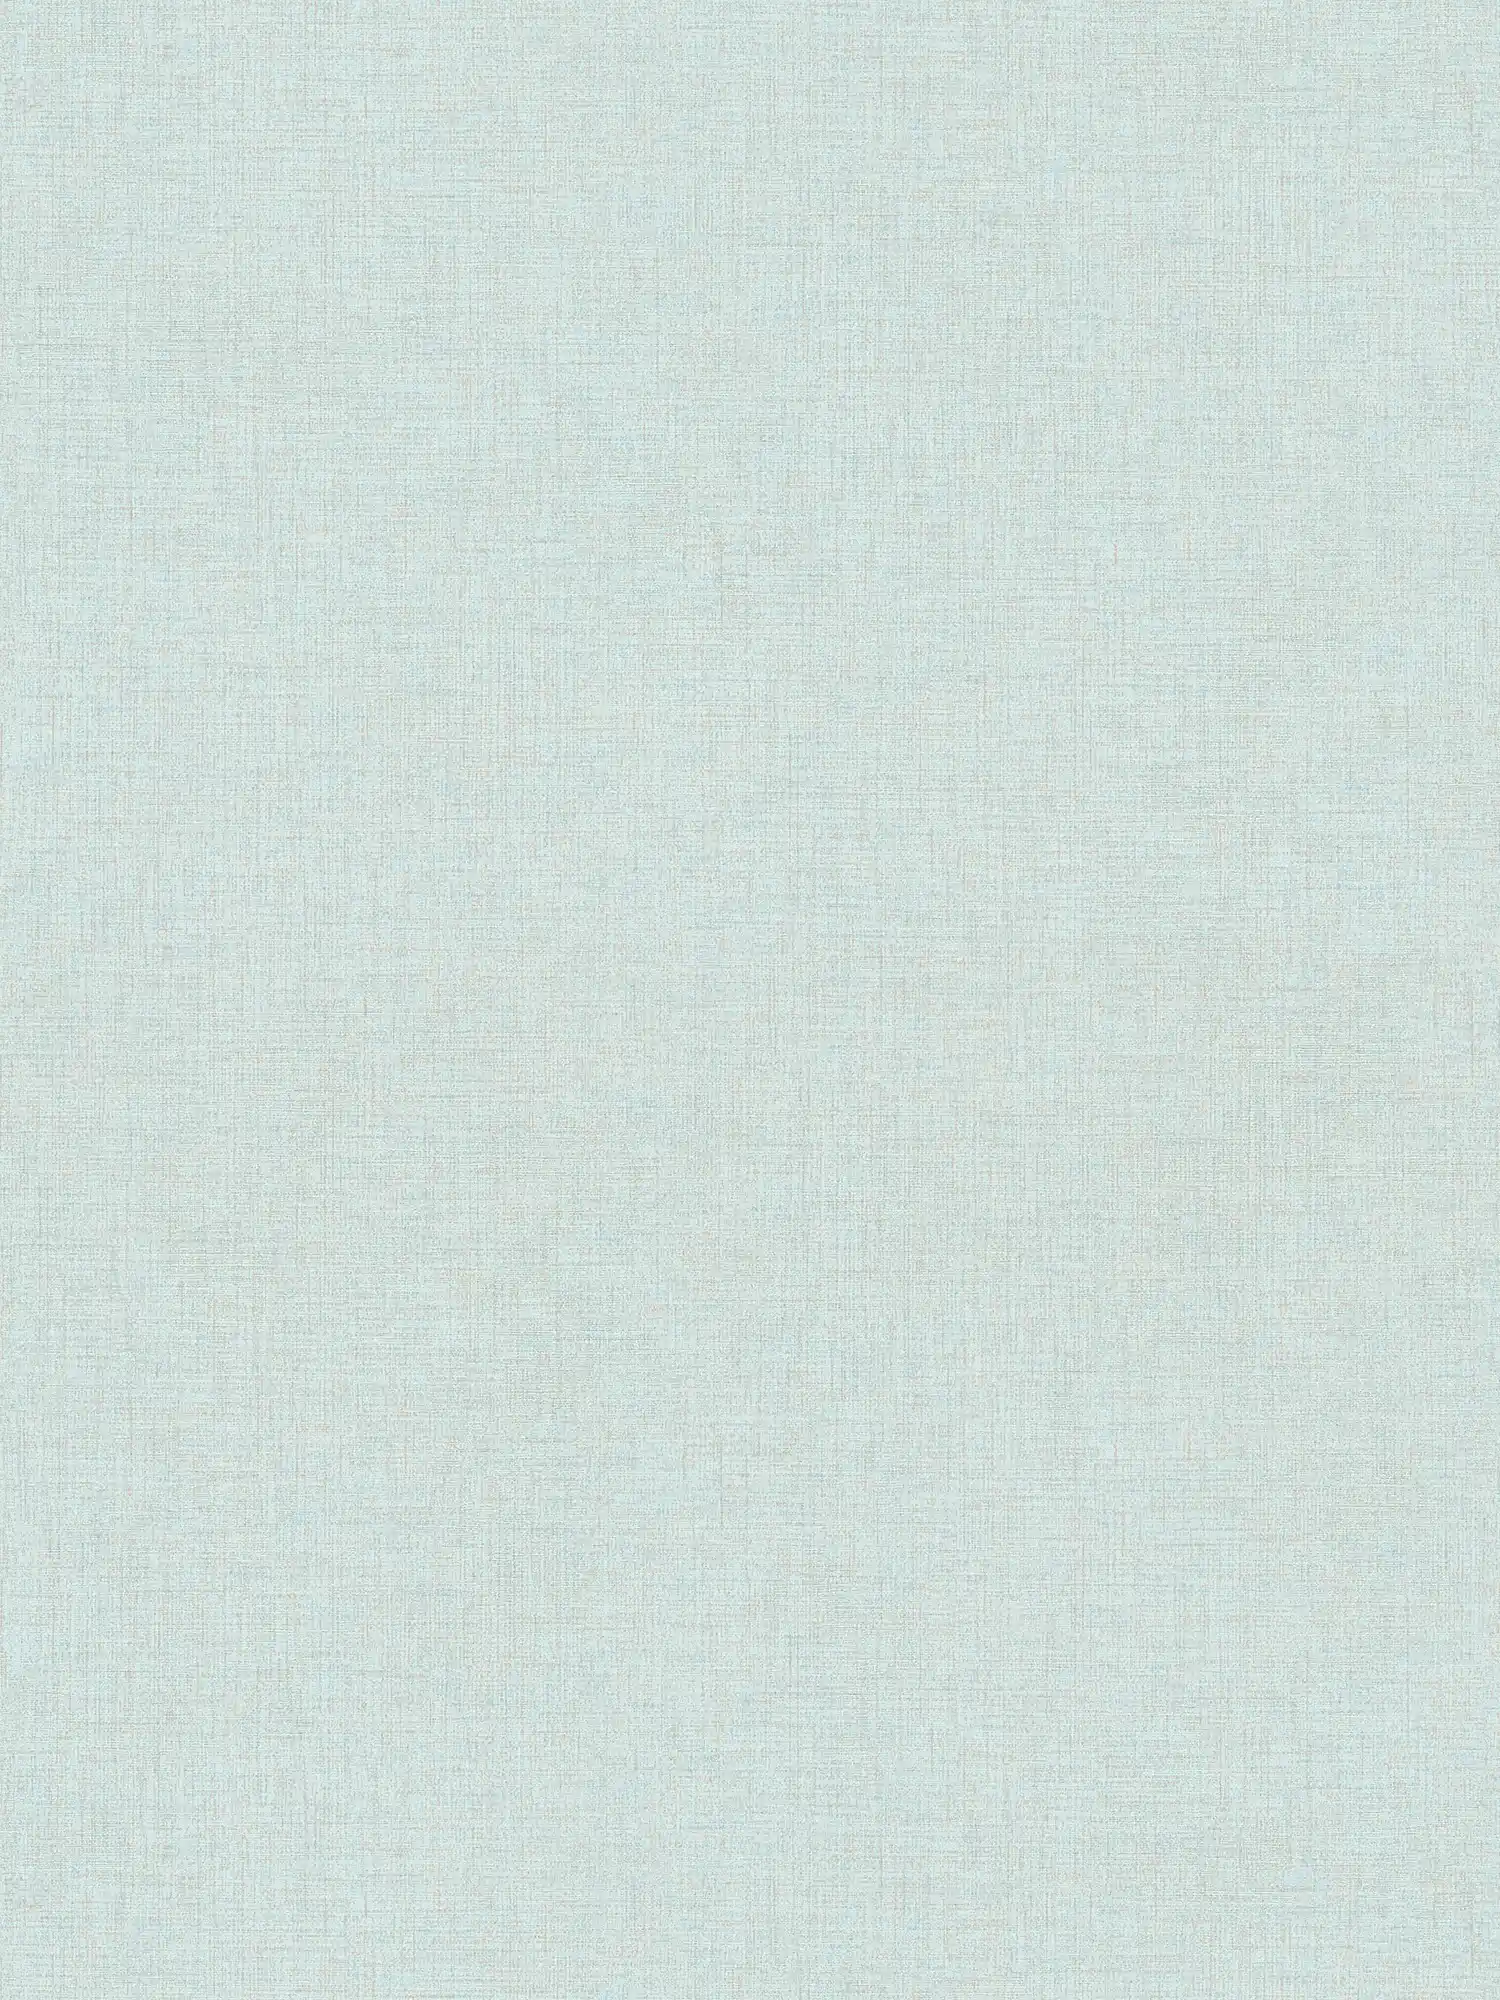 Plain wallpaper with subtle linen look - blue
